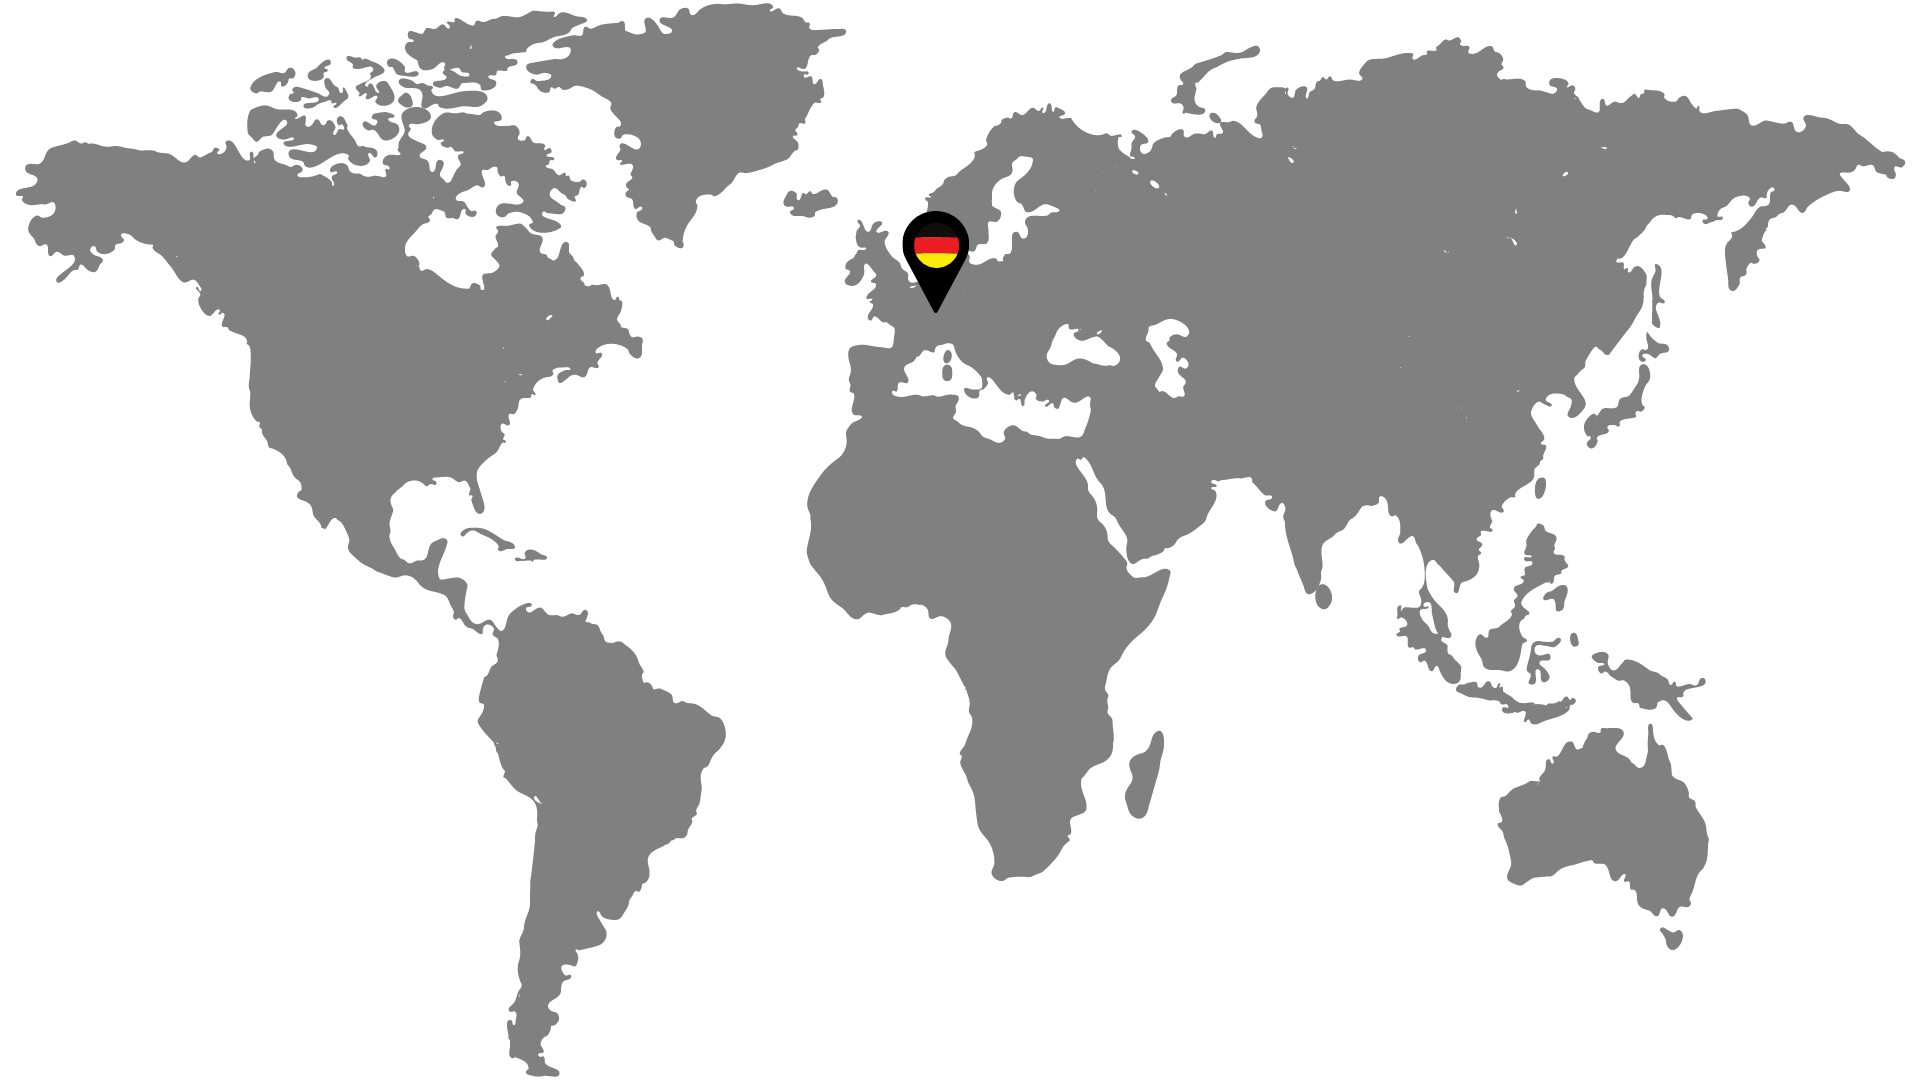 Weltkarte mit einem Markierungspunkt über Deutschland, symbolisierend die Zweigniederlassungen ausländischer Firmen in Deutschland.